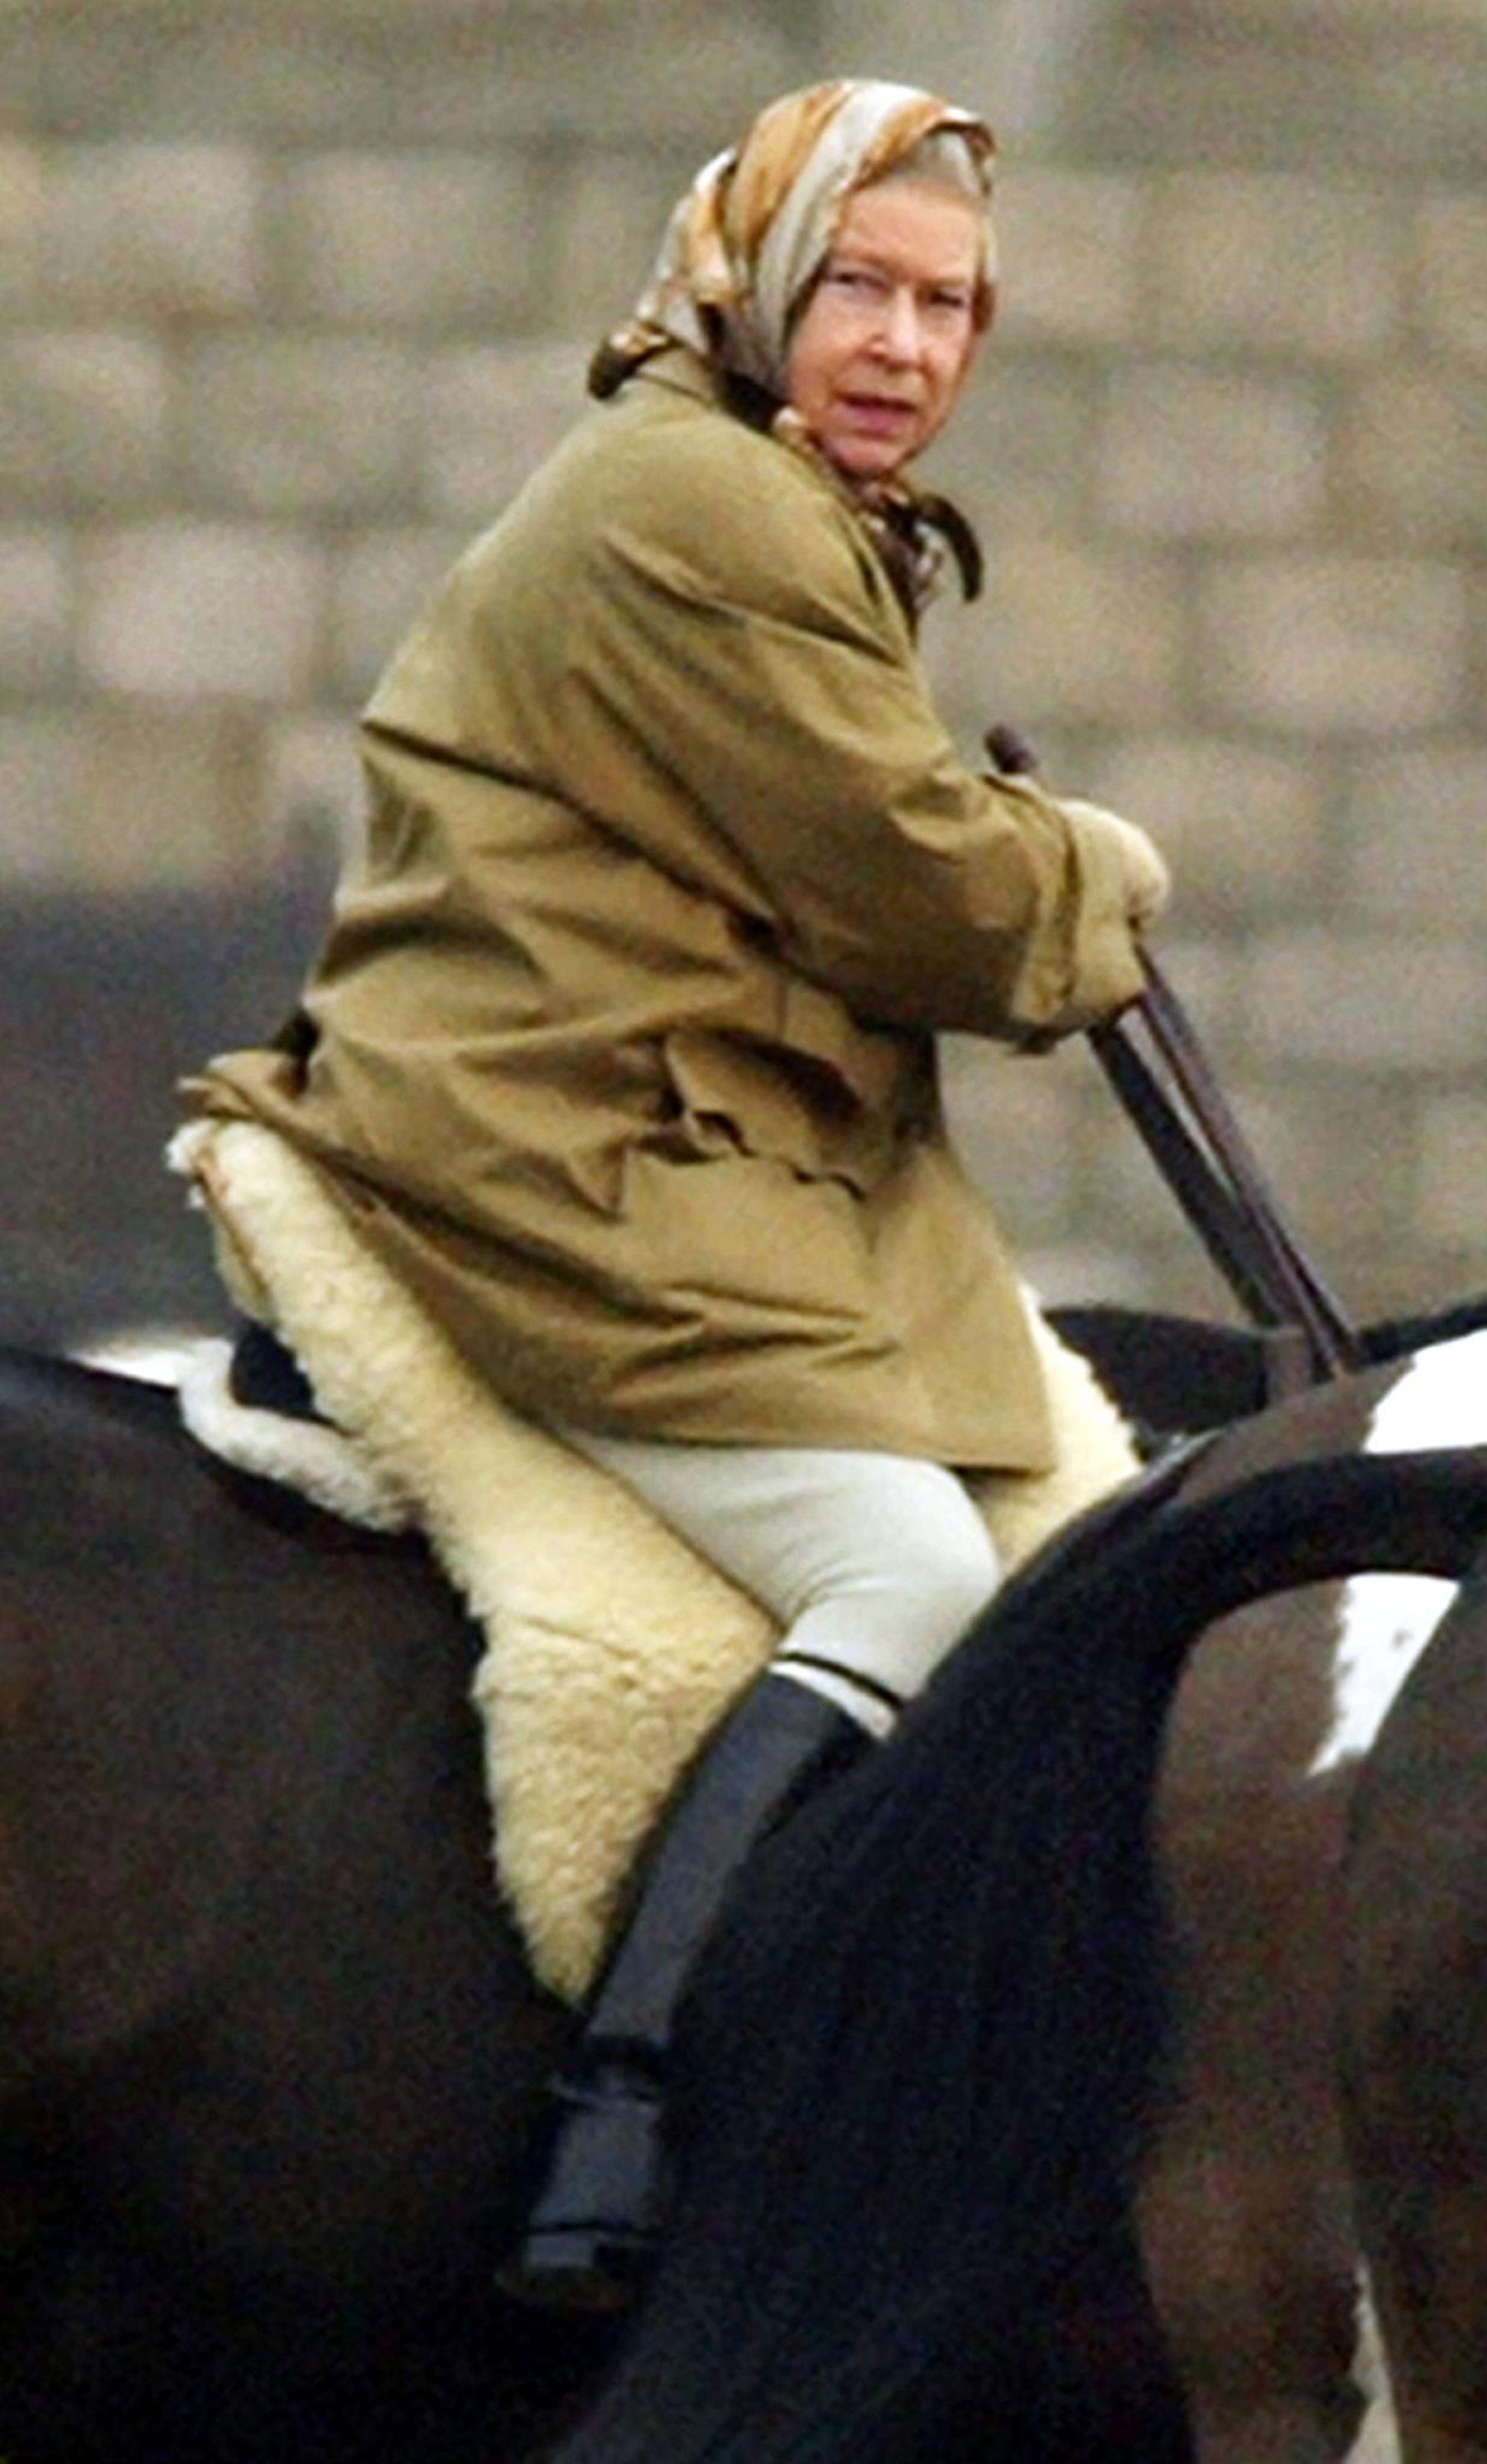 2002: De Queen rijdt vandaag de dag nog steeds rond op paarden. Het is haar grootste passie.